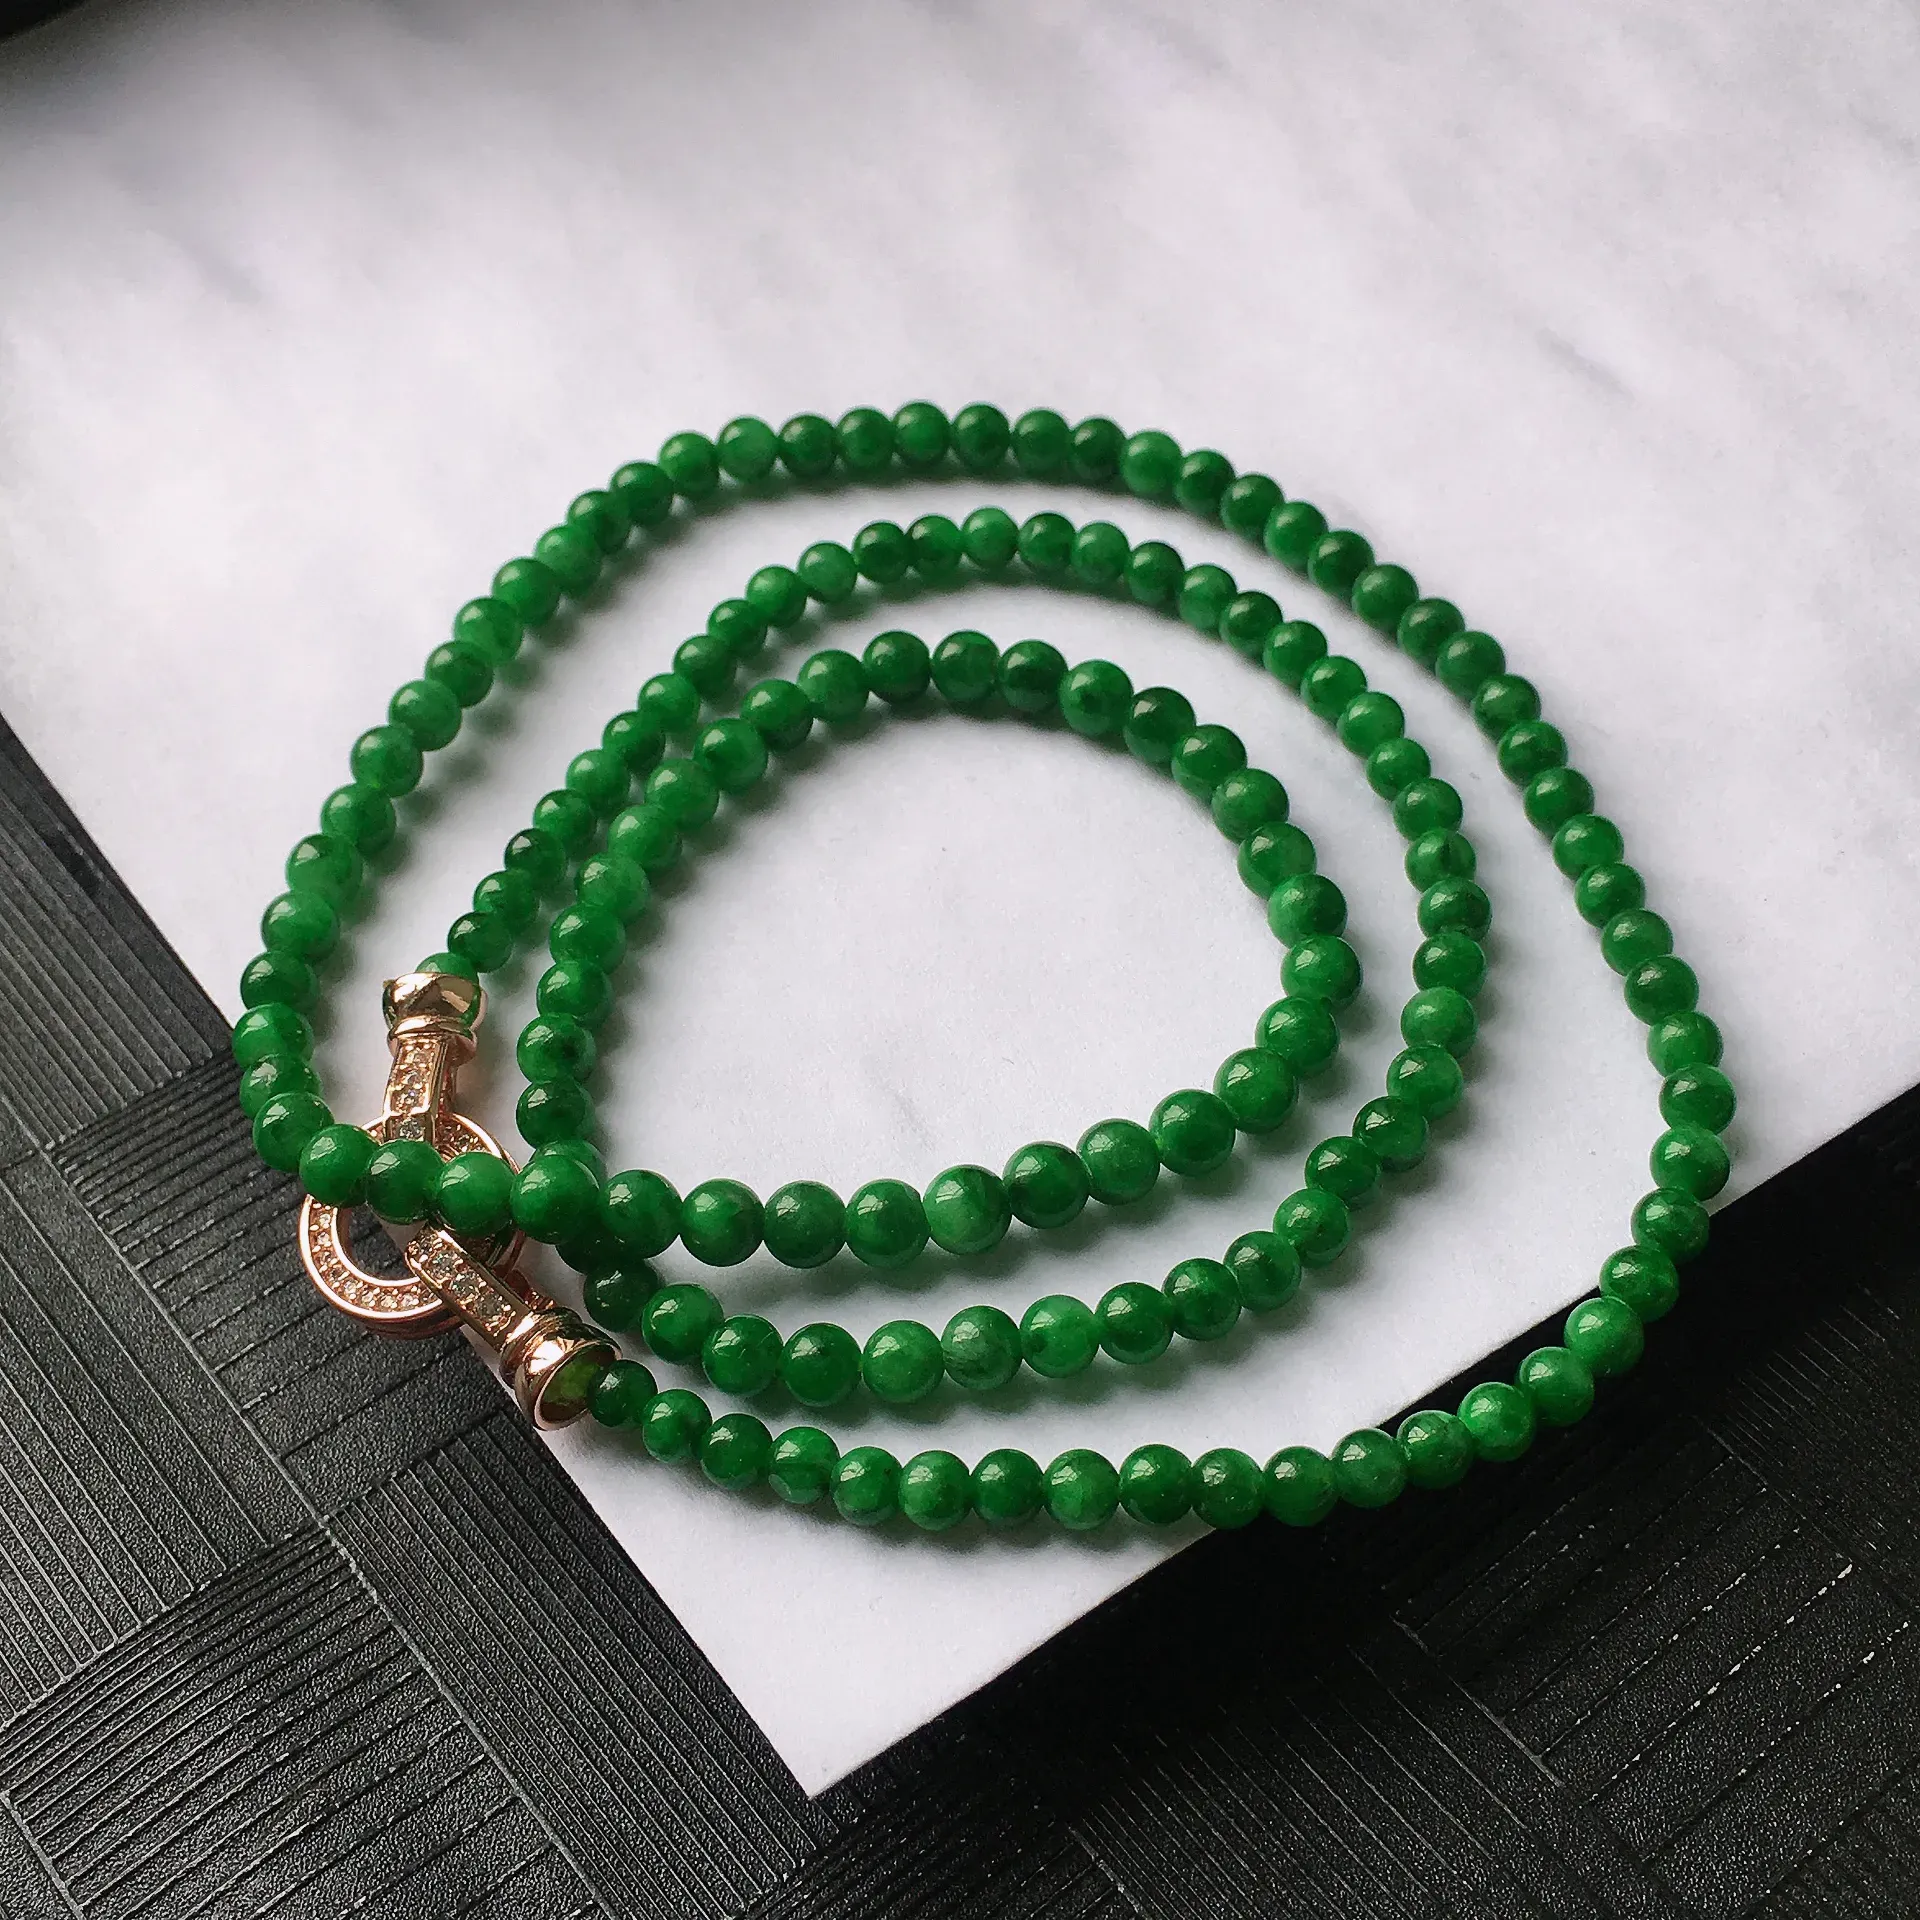 天然A货翡翠满阳绿圆珠项链，种水好玉质细腻温润，颜色漂亮。尺寸：取大 4.6mm 取小 3.6mm 项链周长：55.5cm